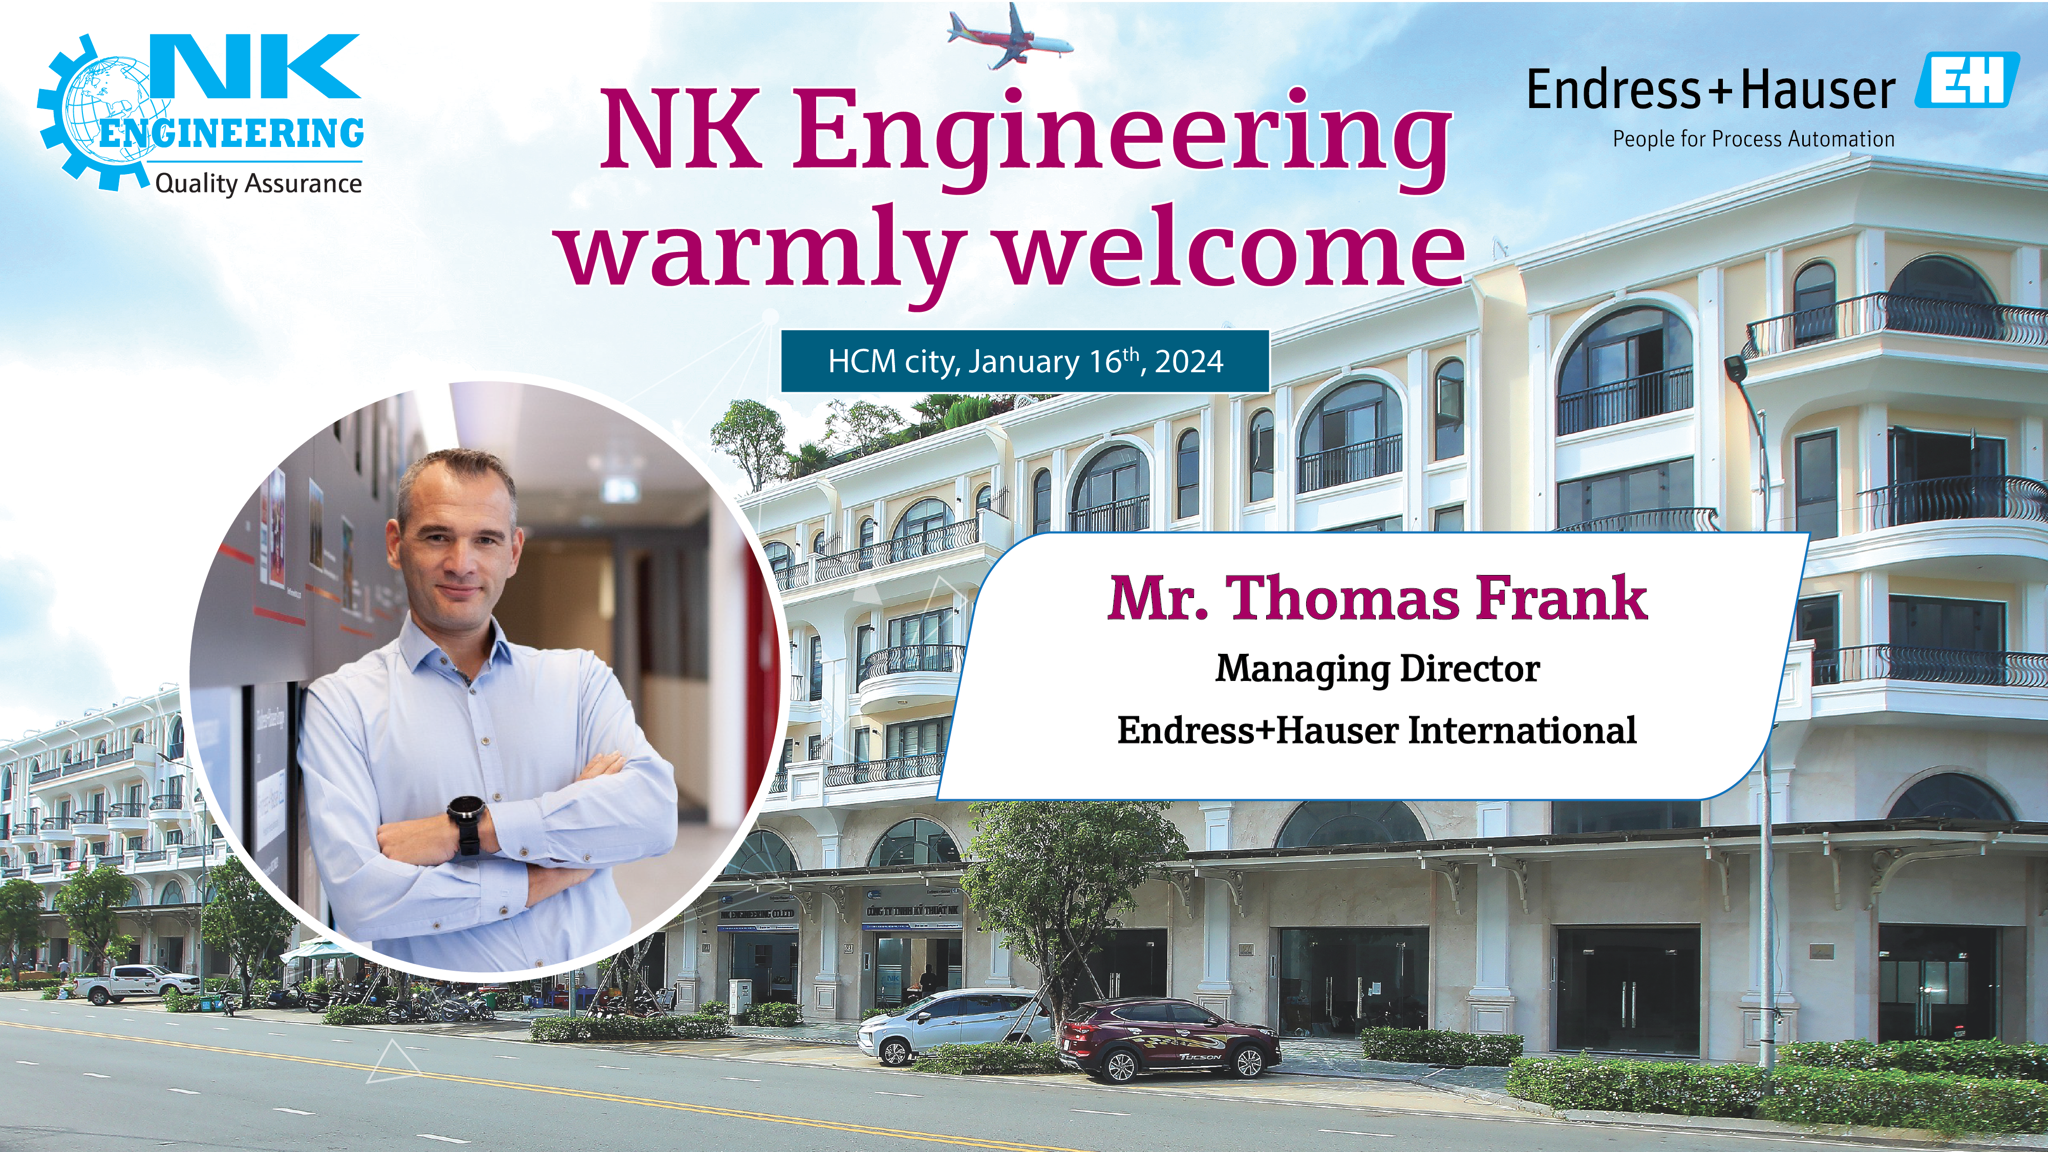 NK Engineering đón tiếp Thomas Frank tới thăm và làm việc tại công ty